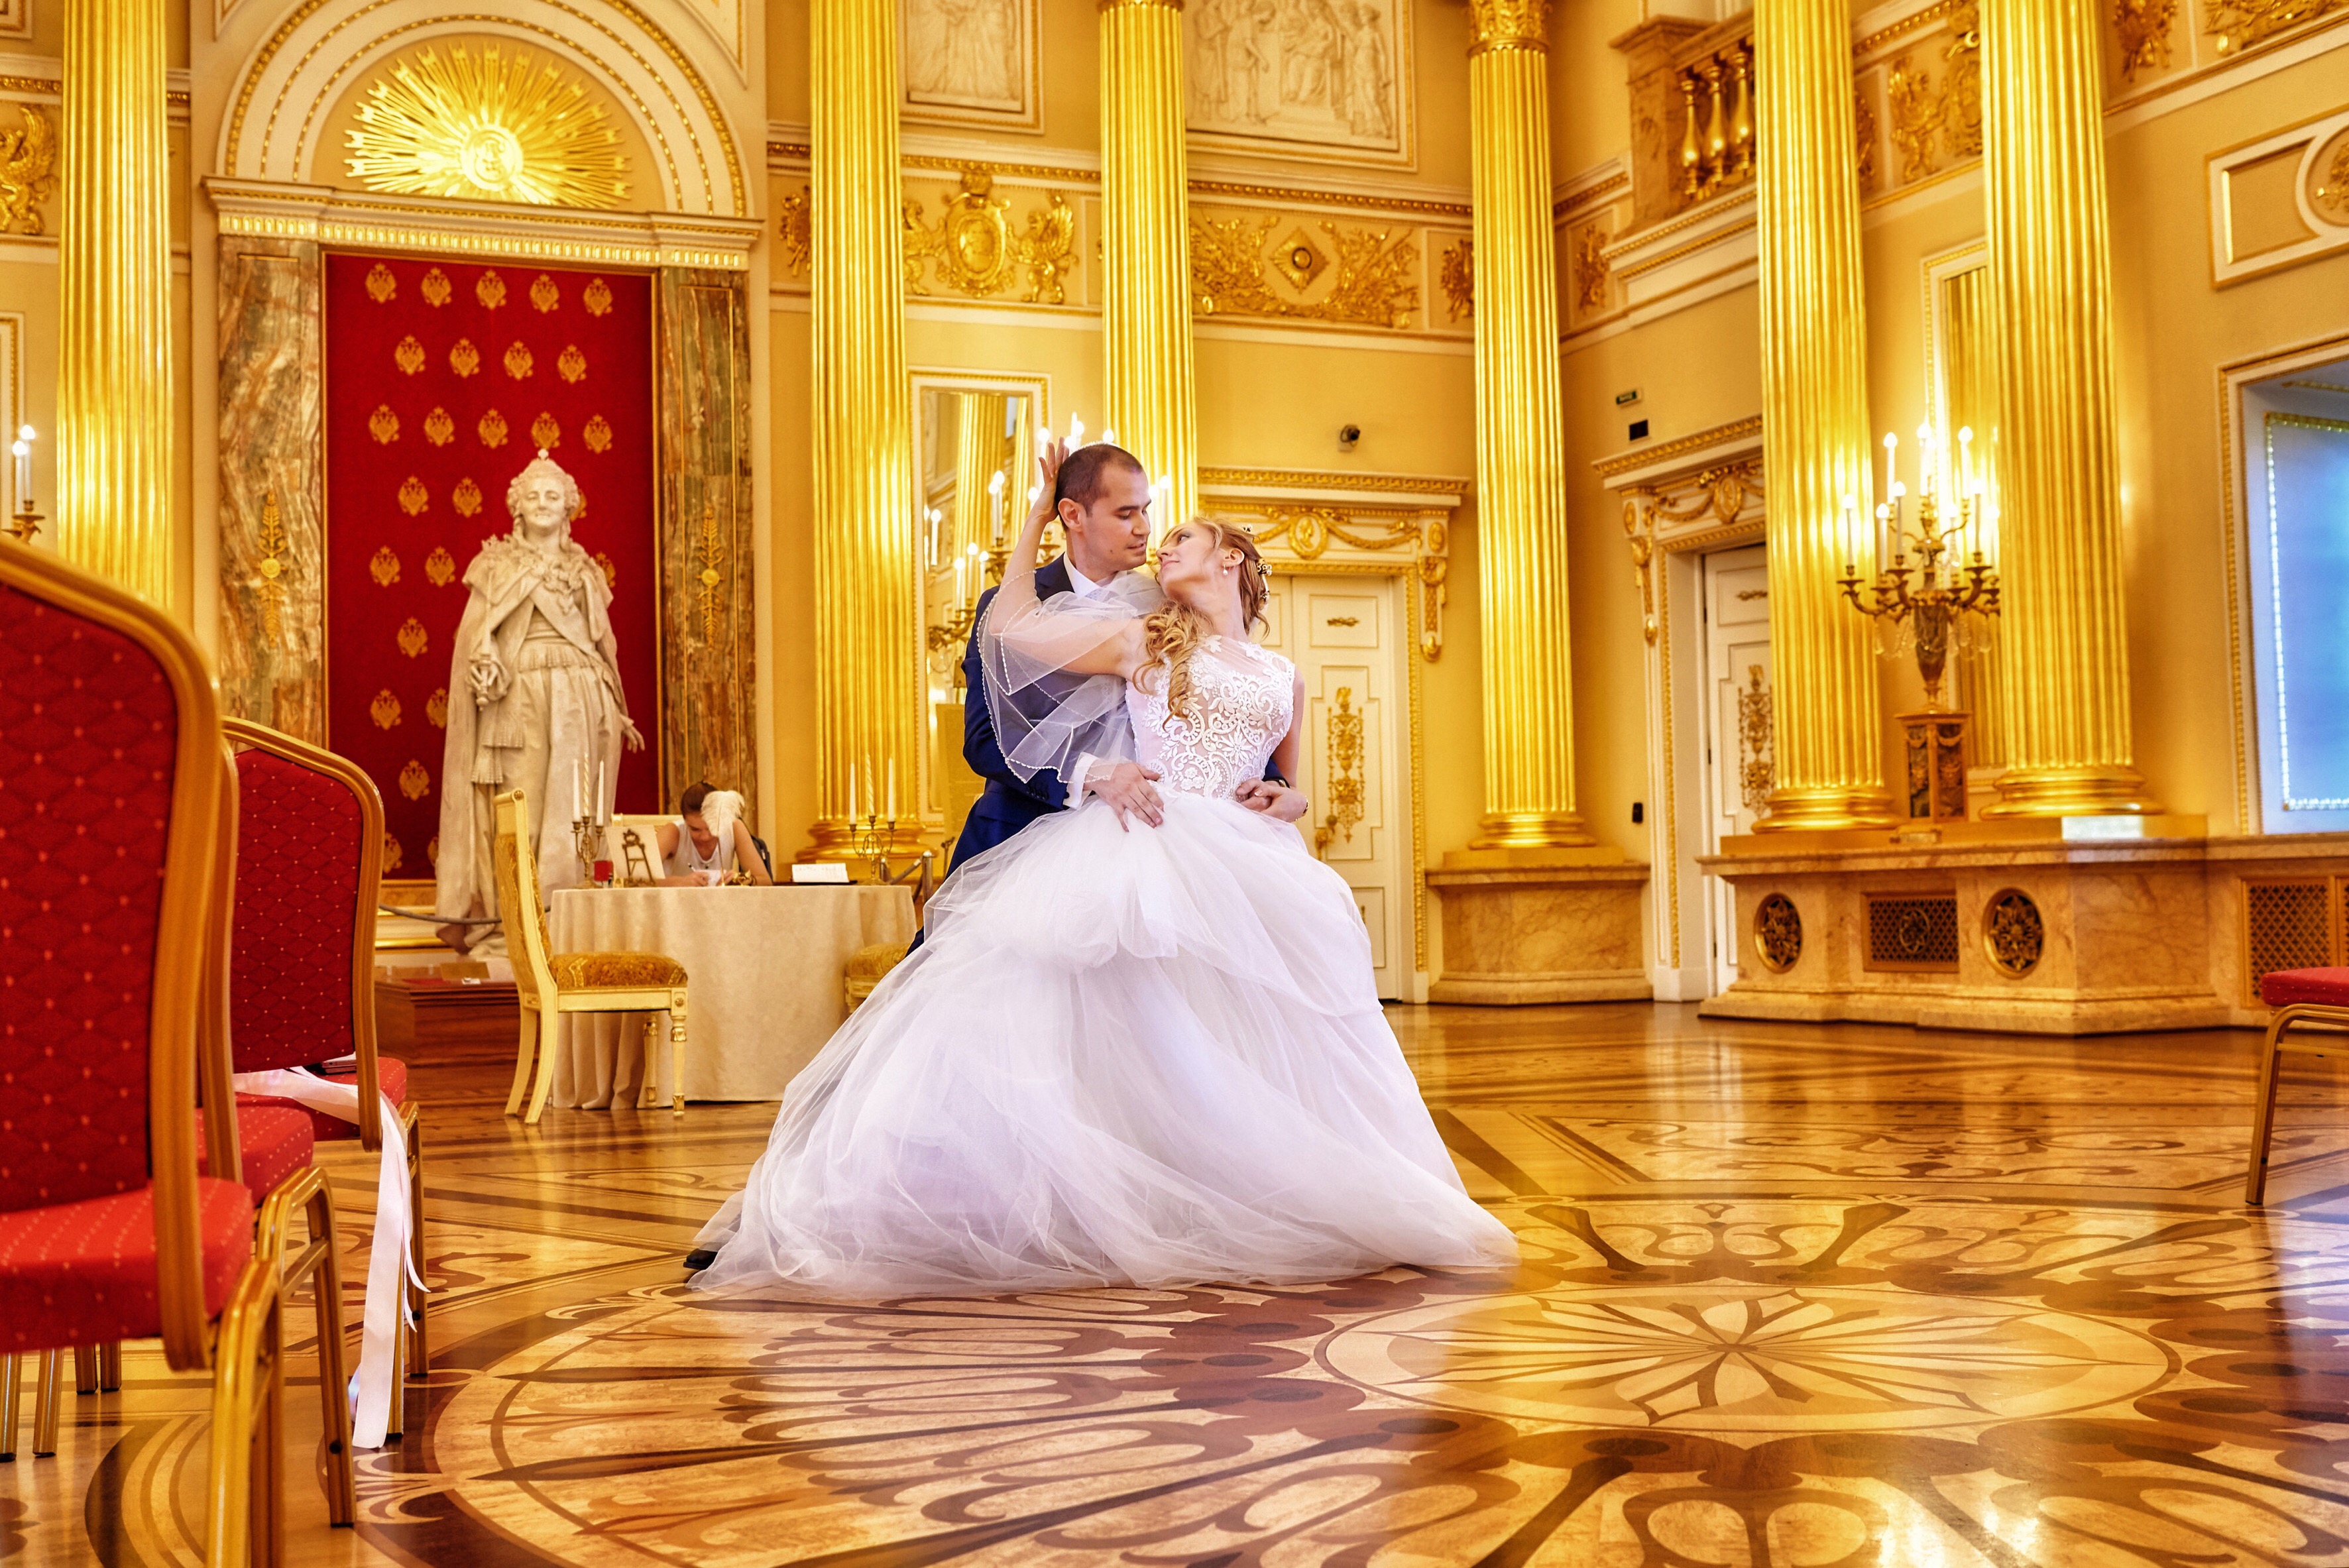 Екатерининский дворец бракосочетания в Москве